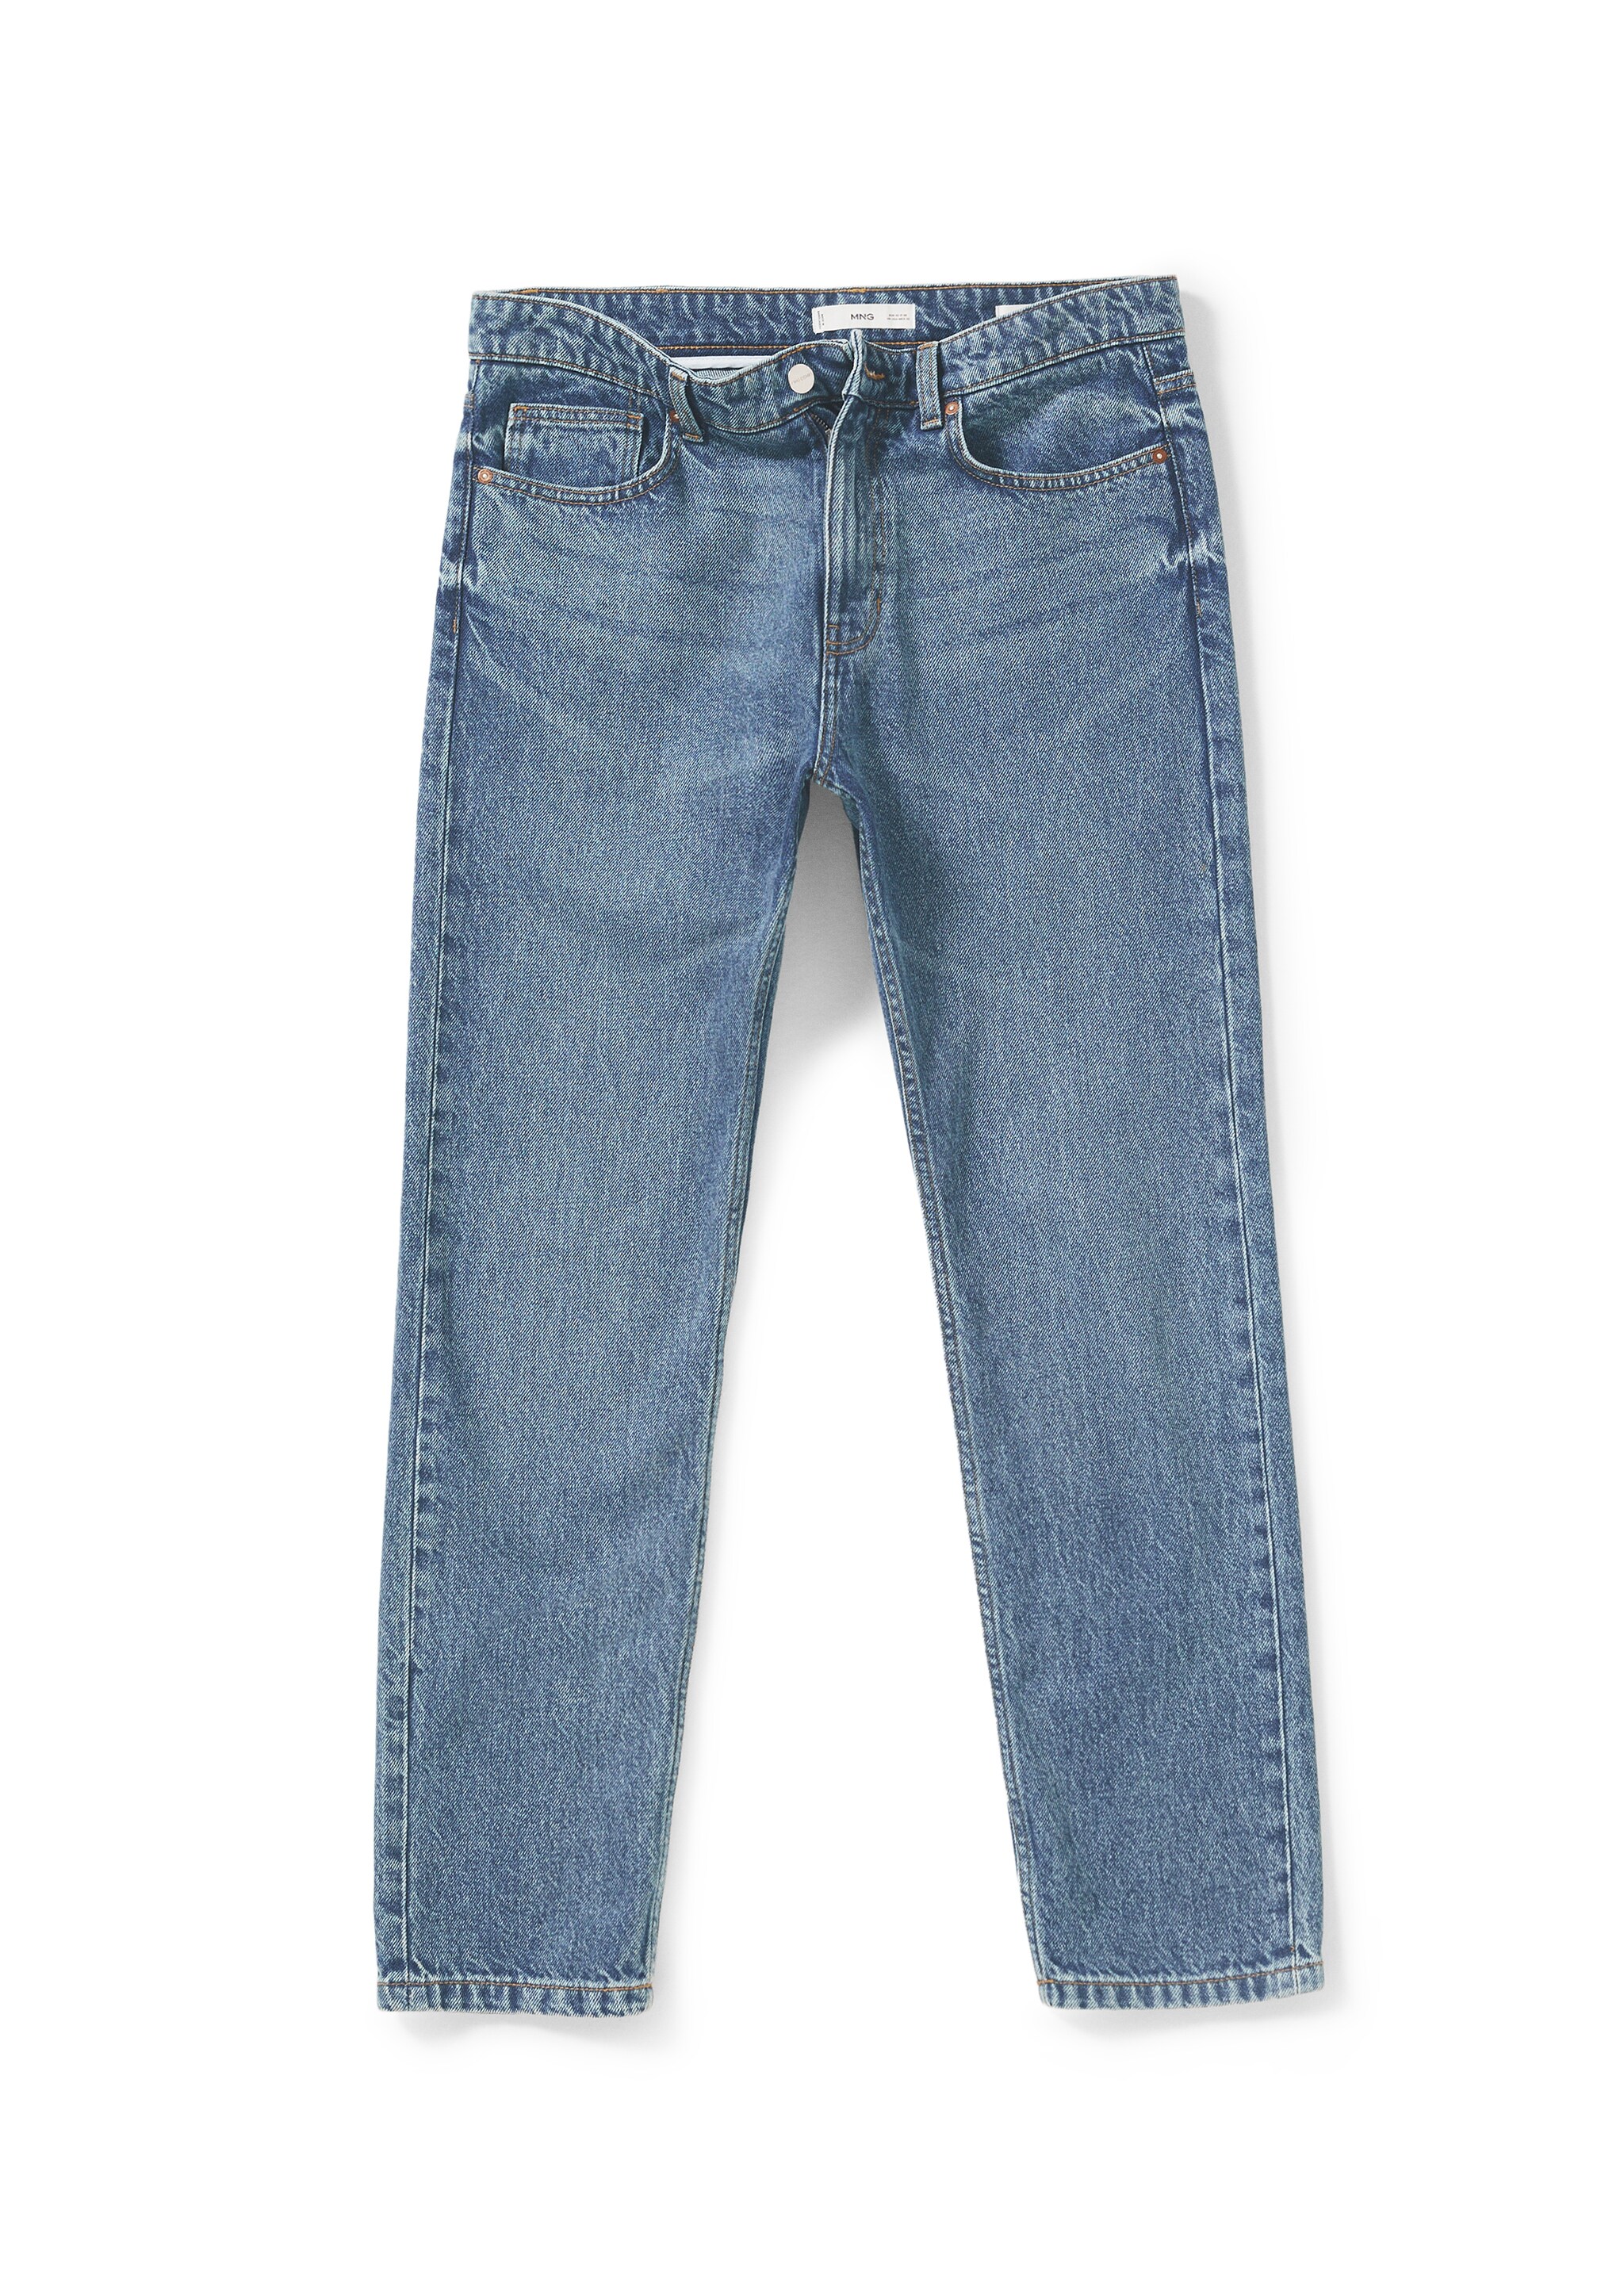 Jeans Bob Straight-fit - Artikkeldetalj 9